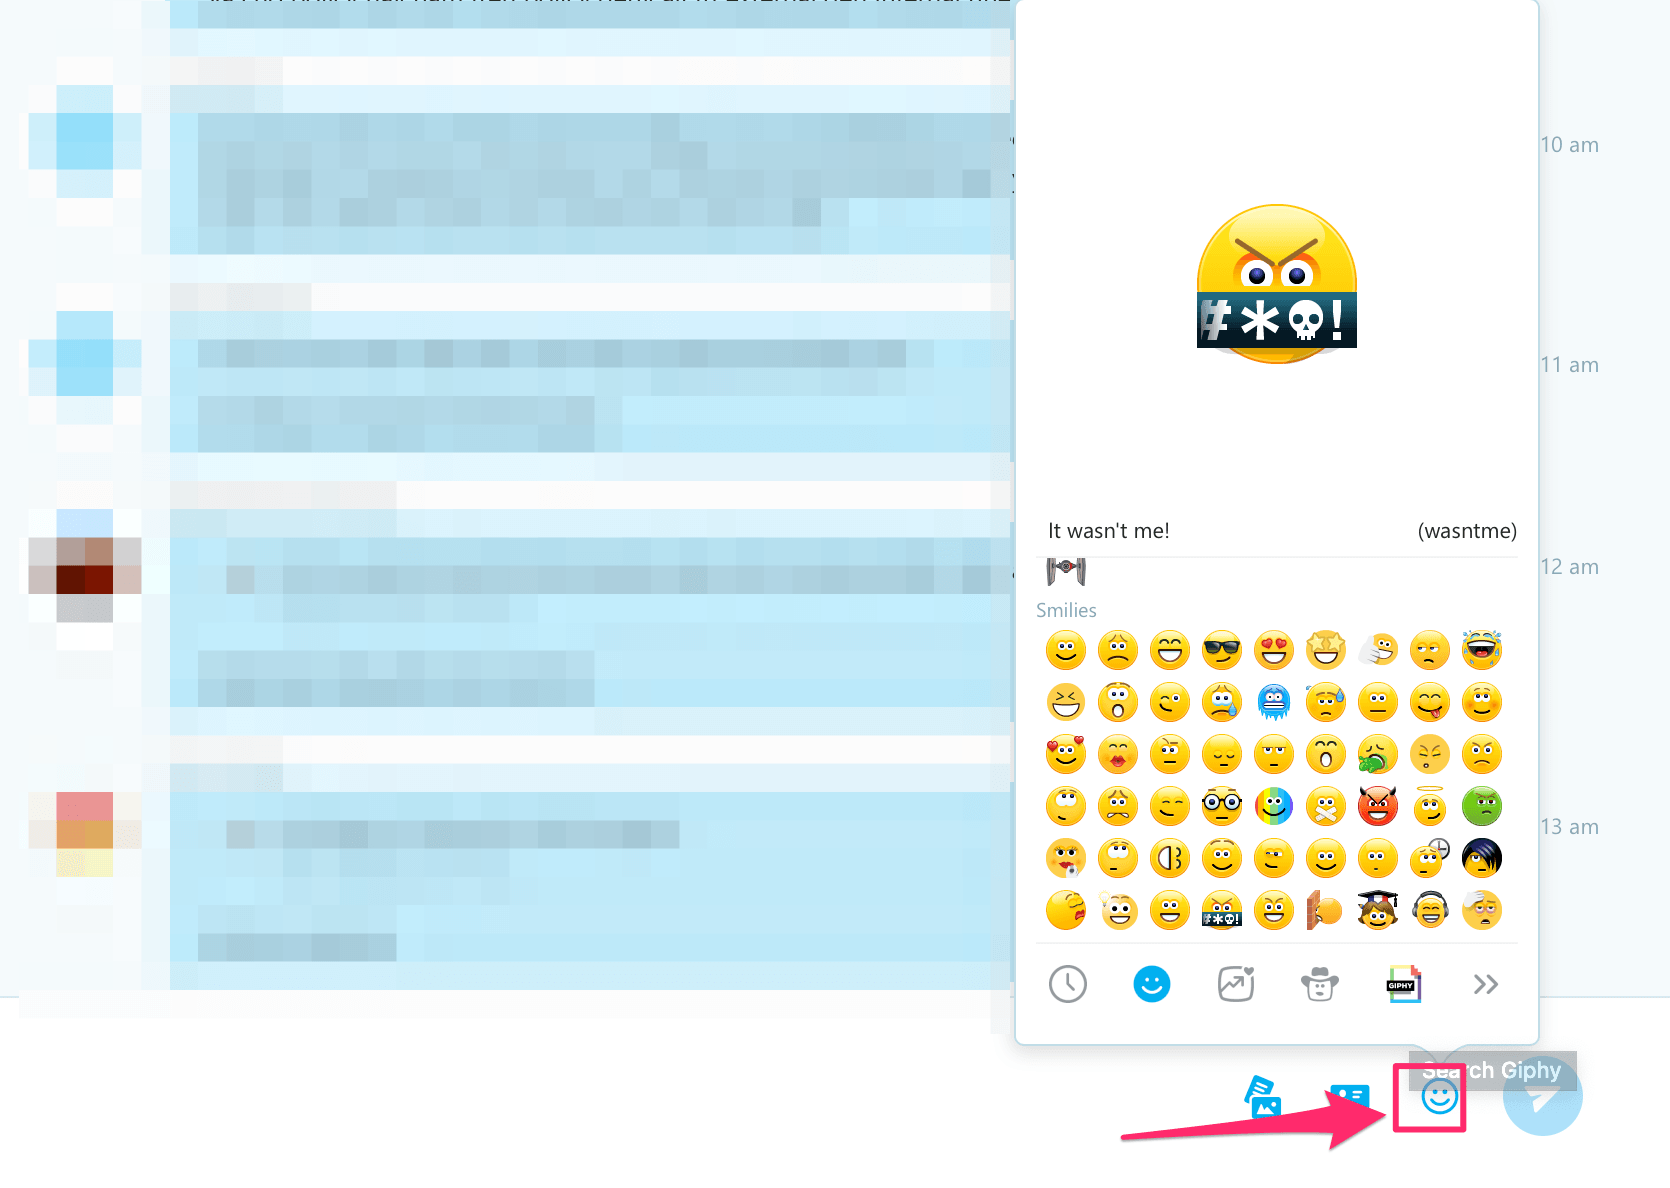 skype web chat biểu tượng cảm xúc